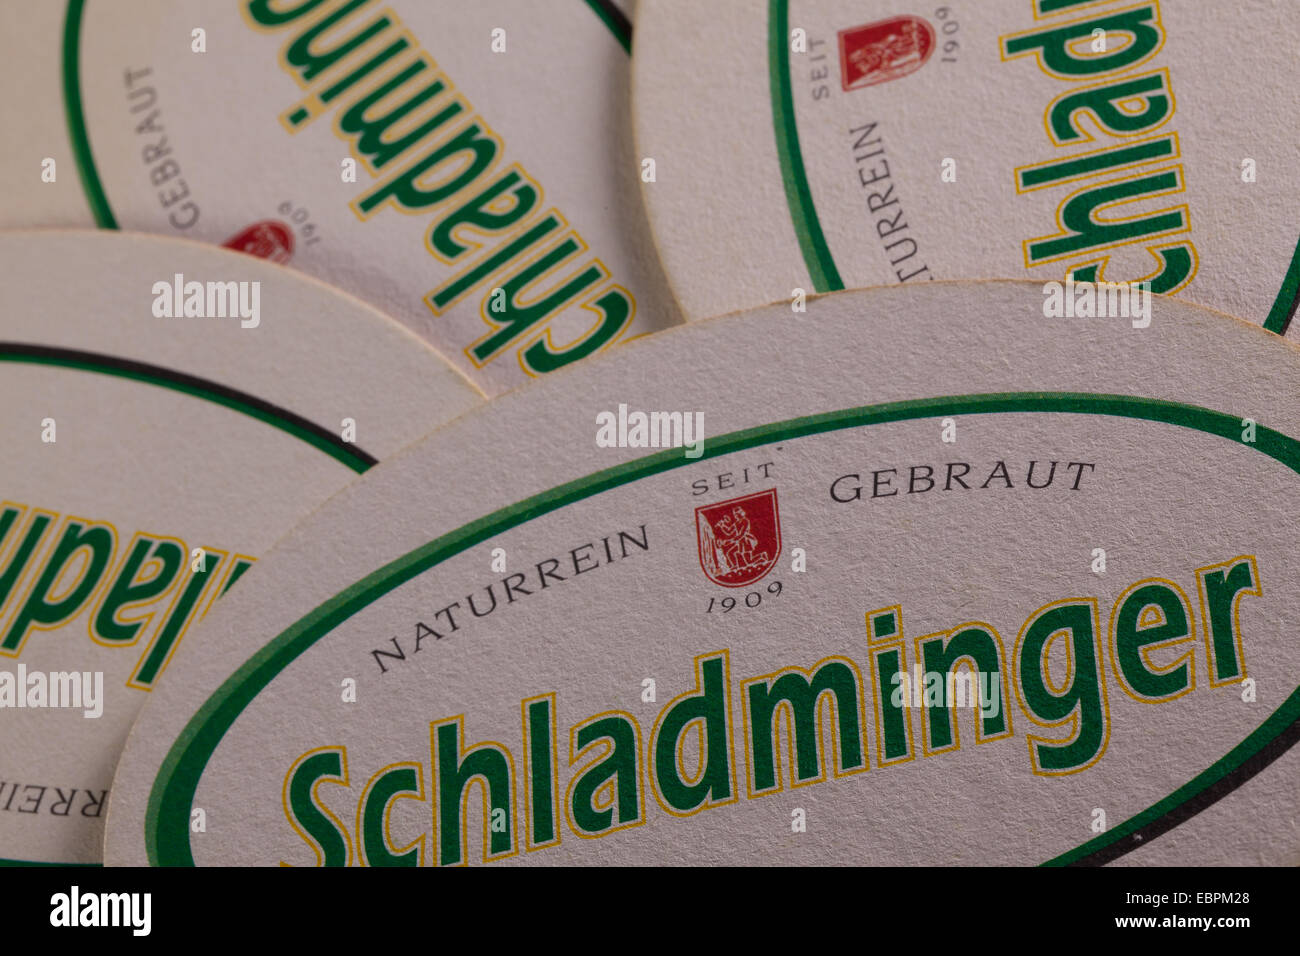 AUSTRIA, Schladming - Giugno 6, 2014: Beermats da Schladminger birra.Schladminger birra ha un rinfrescante pieno aroma di malto Foto Stock